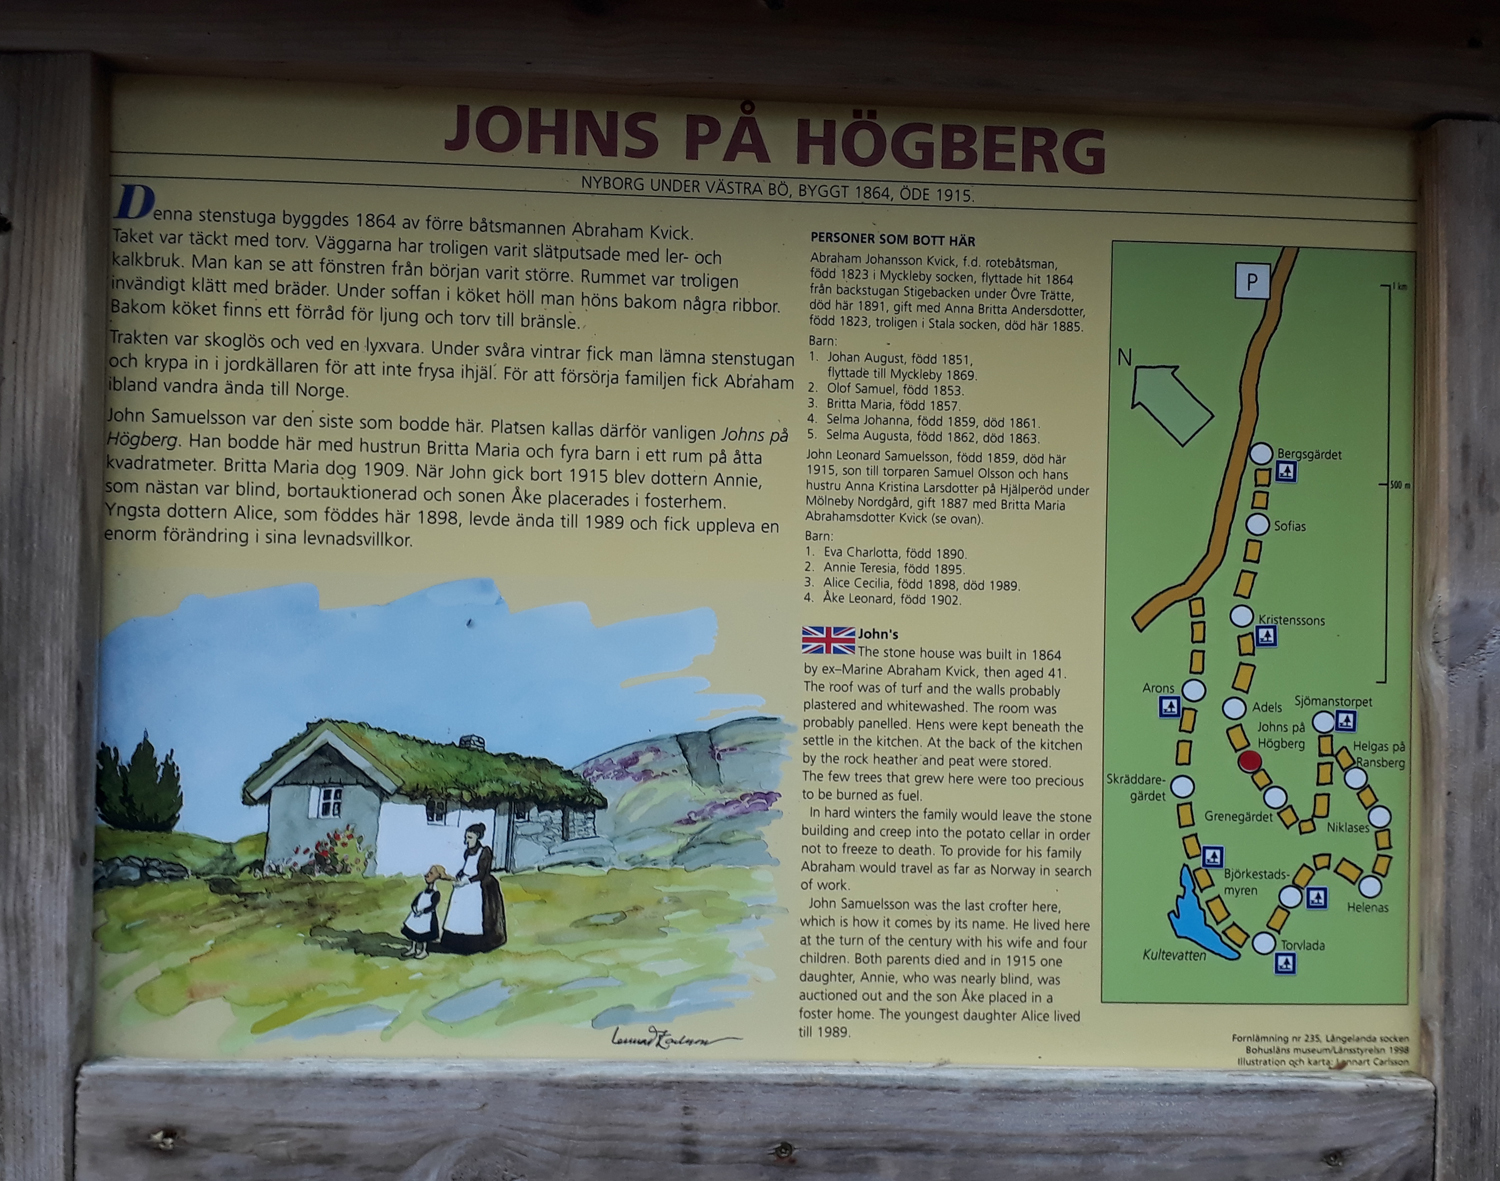 Färgfoto av informationsskylt med text och bild. Rubriken på skylten är: Johns på Högberg.